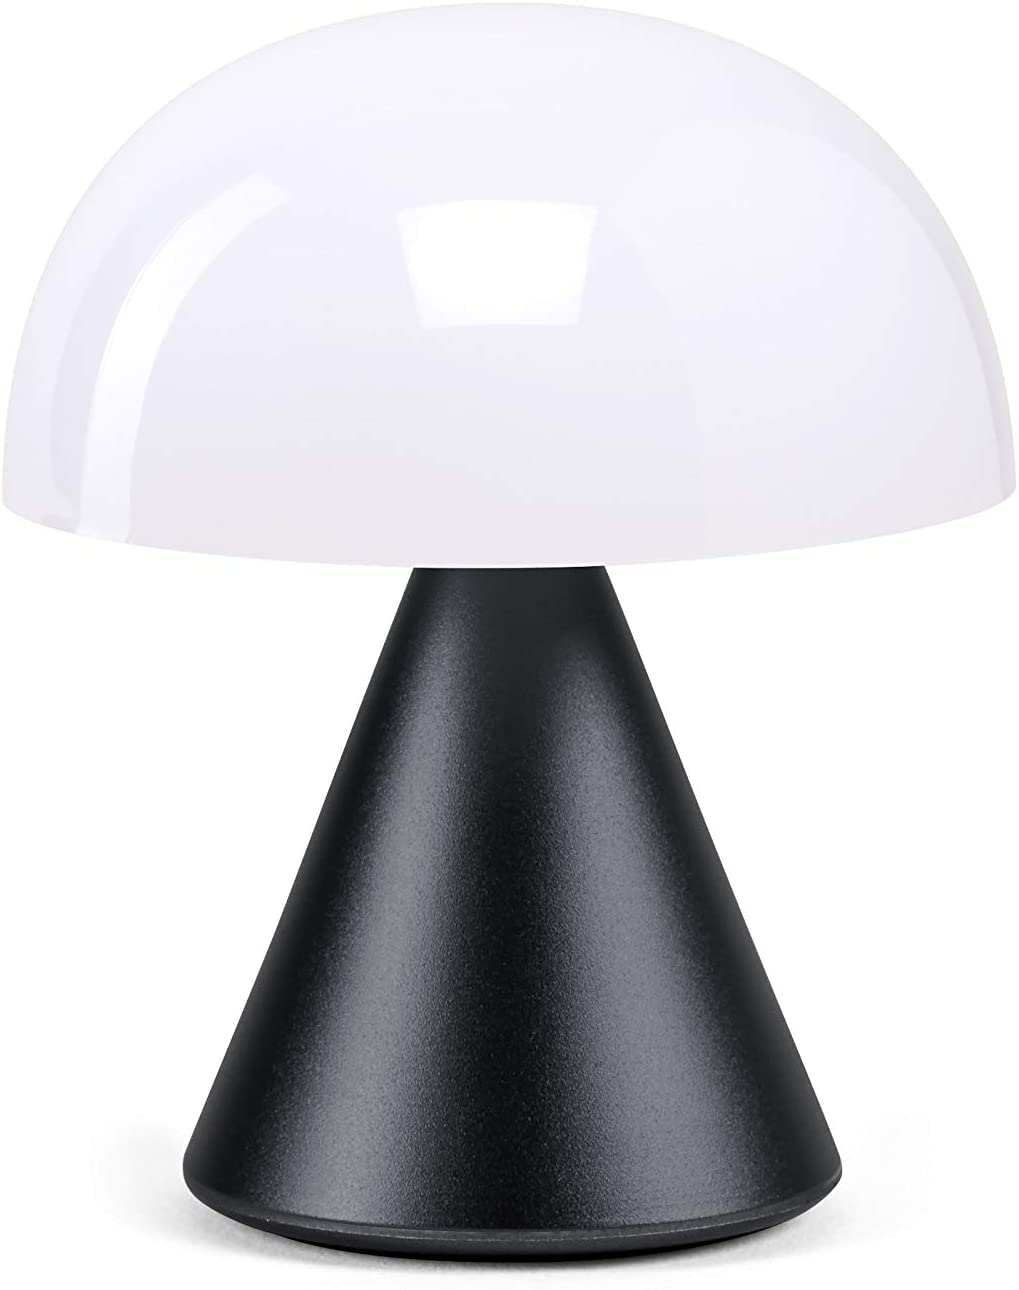 French-Designed LED Lamp